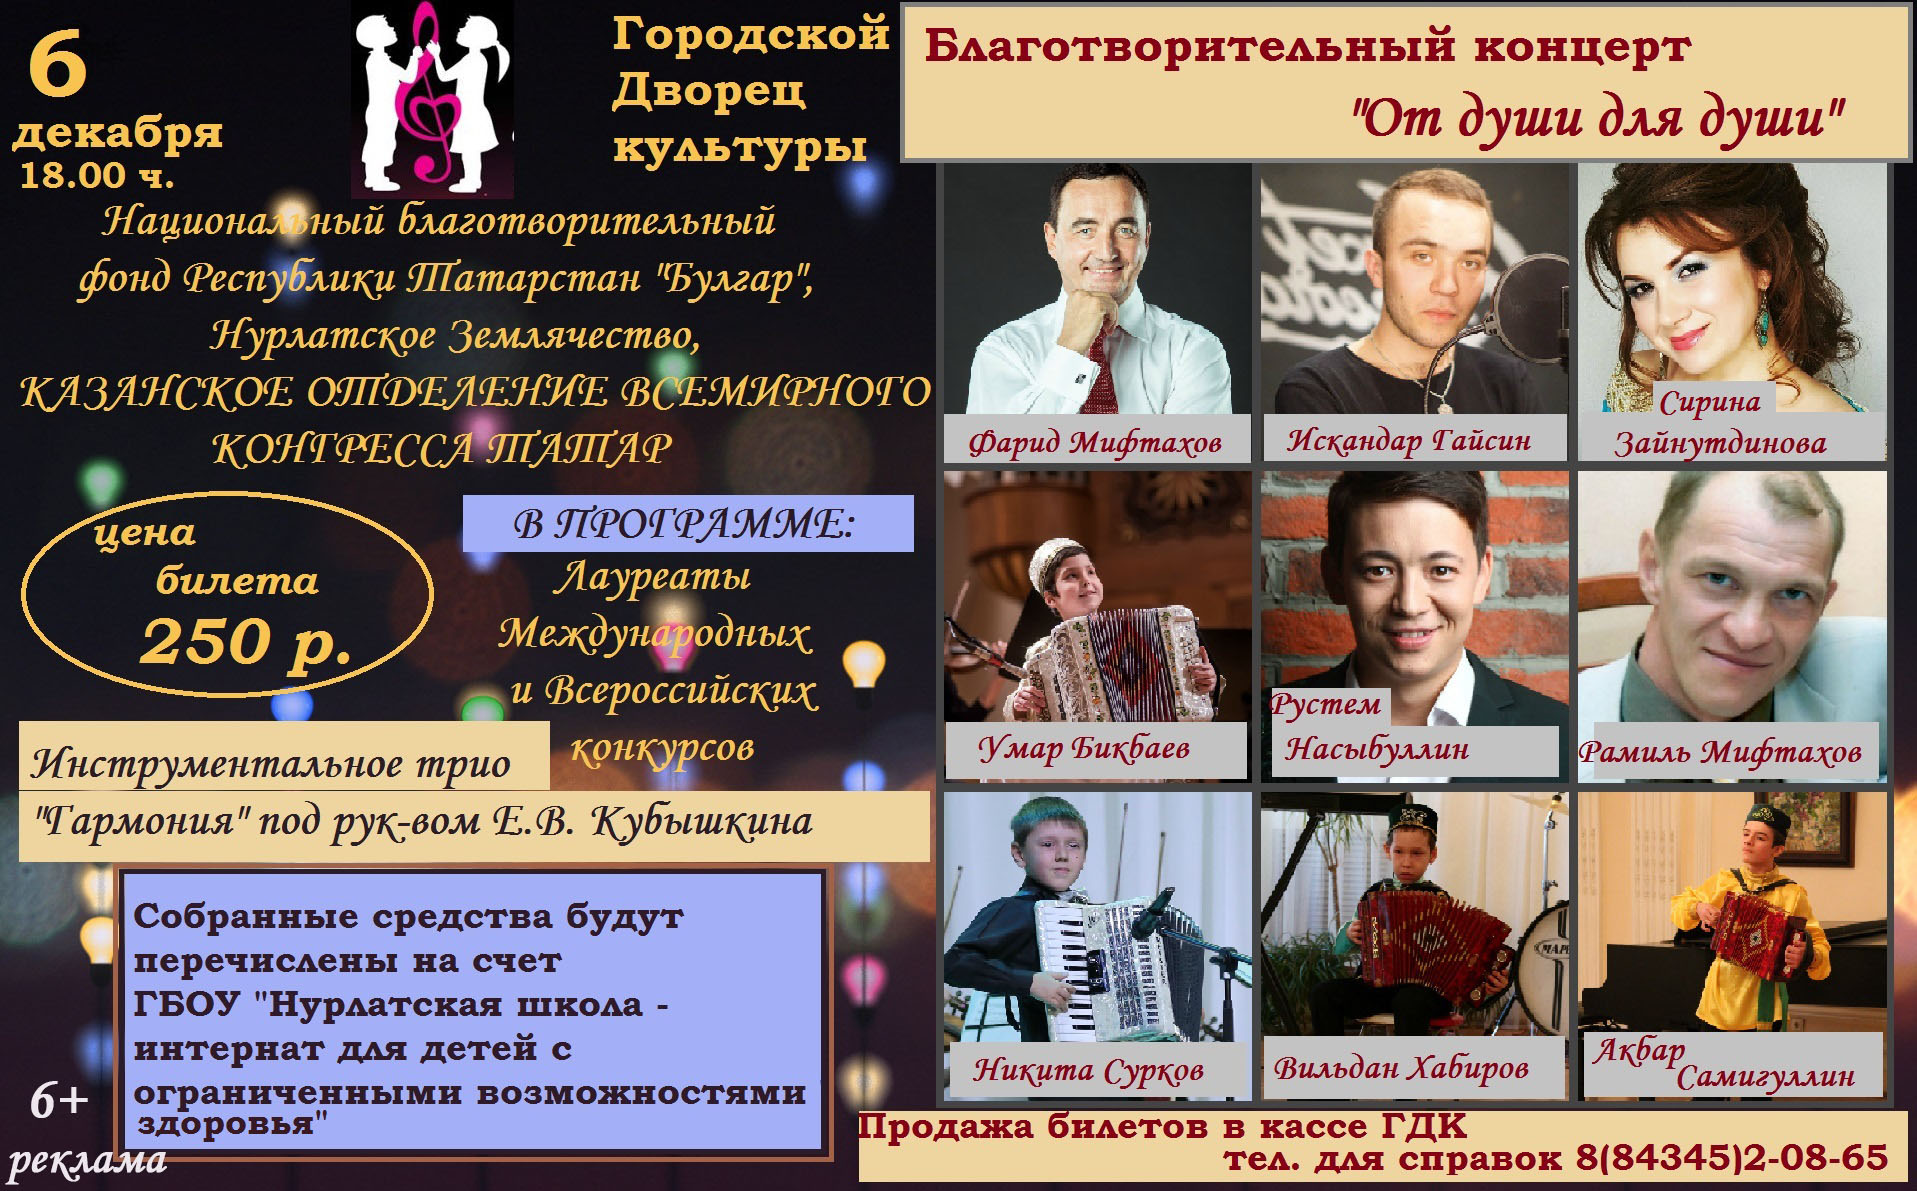 Благотворительный концерт Барнаул Михутка. Афиша на землячество. Программа победителя конкурса